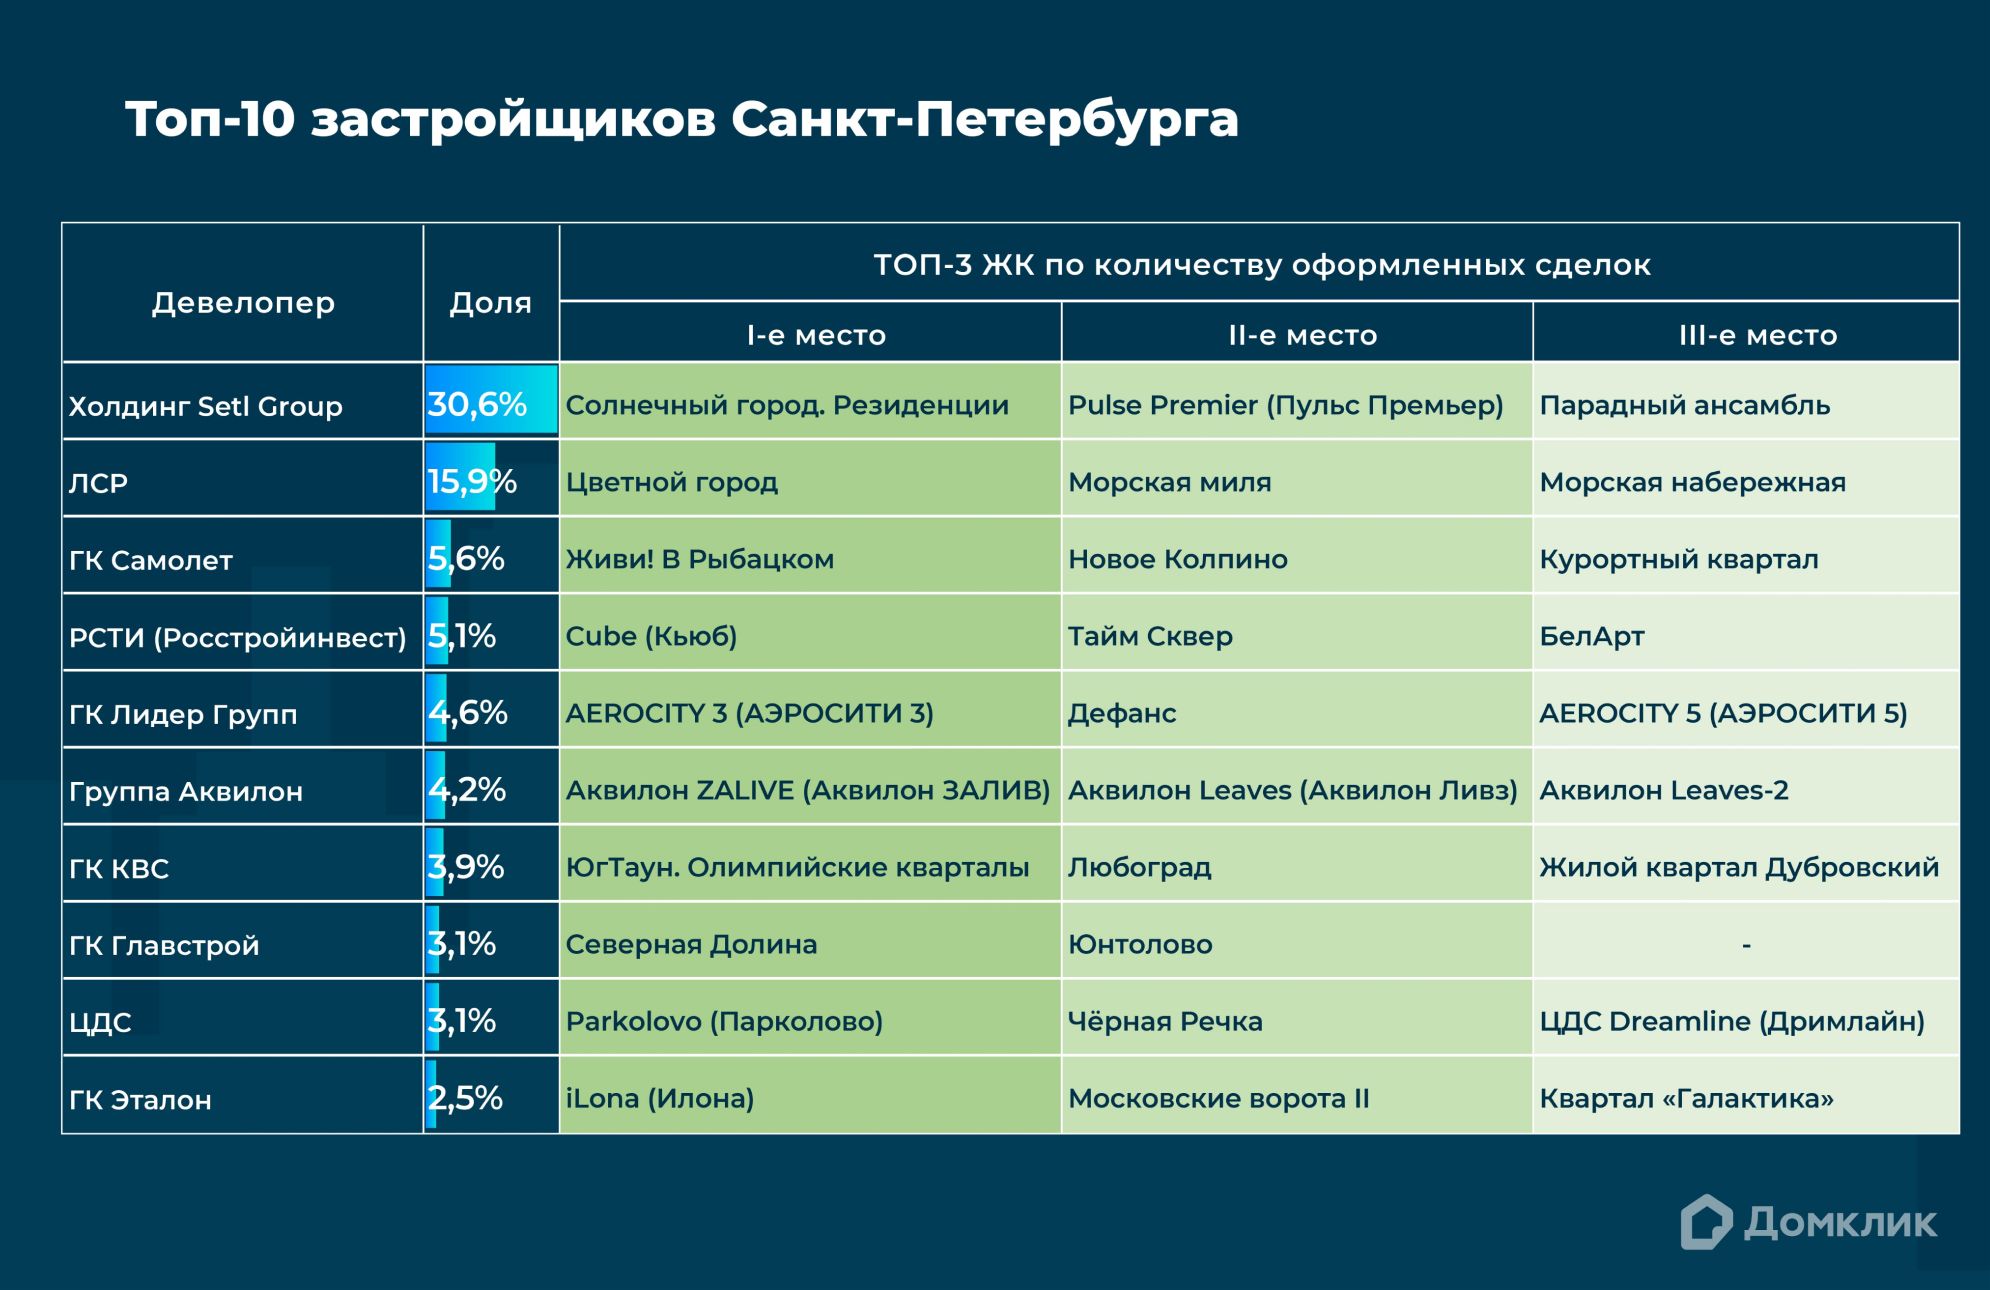 Топ-10 девелоперов Санкт-Петербурга по количеству сделок, проведённых с участием Сбербанка, включая сделки за свои средства.